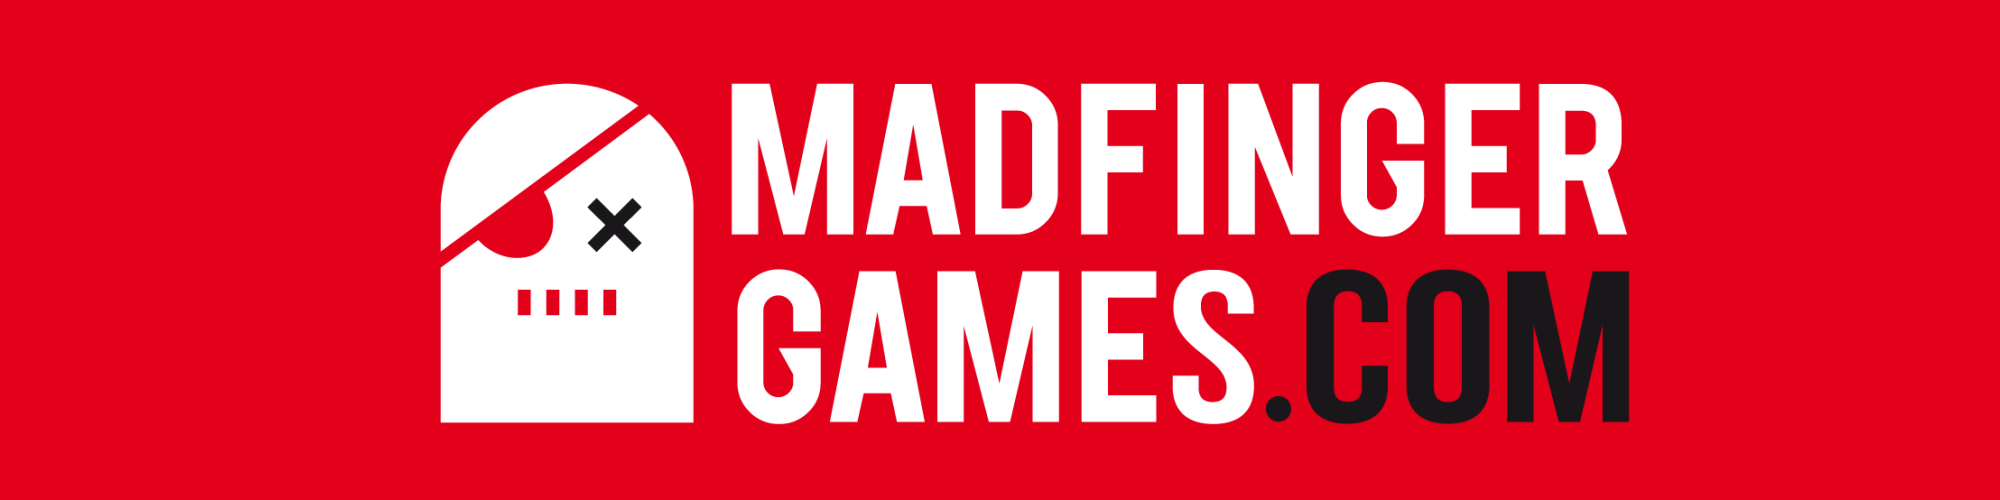 MADFINGER Games